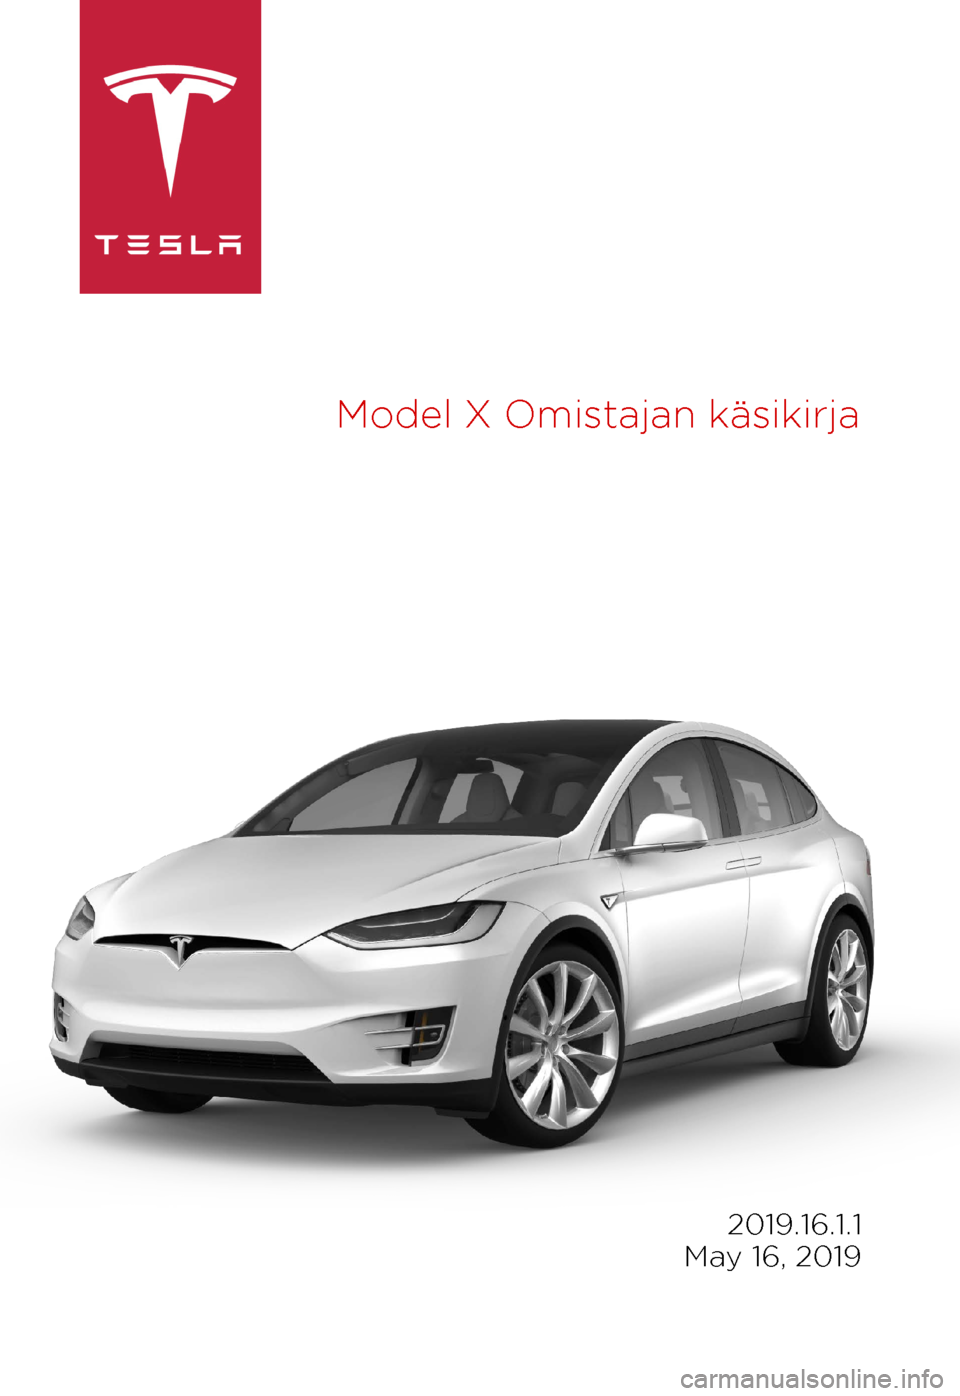 TESLA MODEL X 2019  Omistajan käsikirja (in Finnish) Model 
X Omistajan käsikirja 2019.16.1.1
 
May 16, 2019 